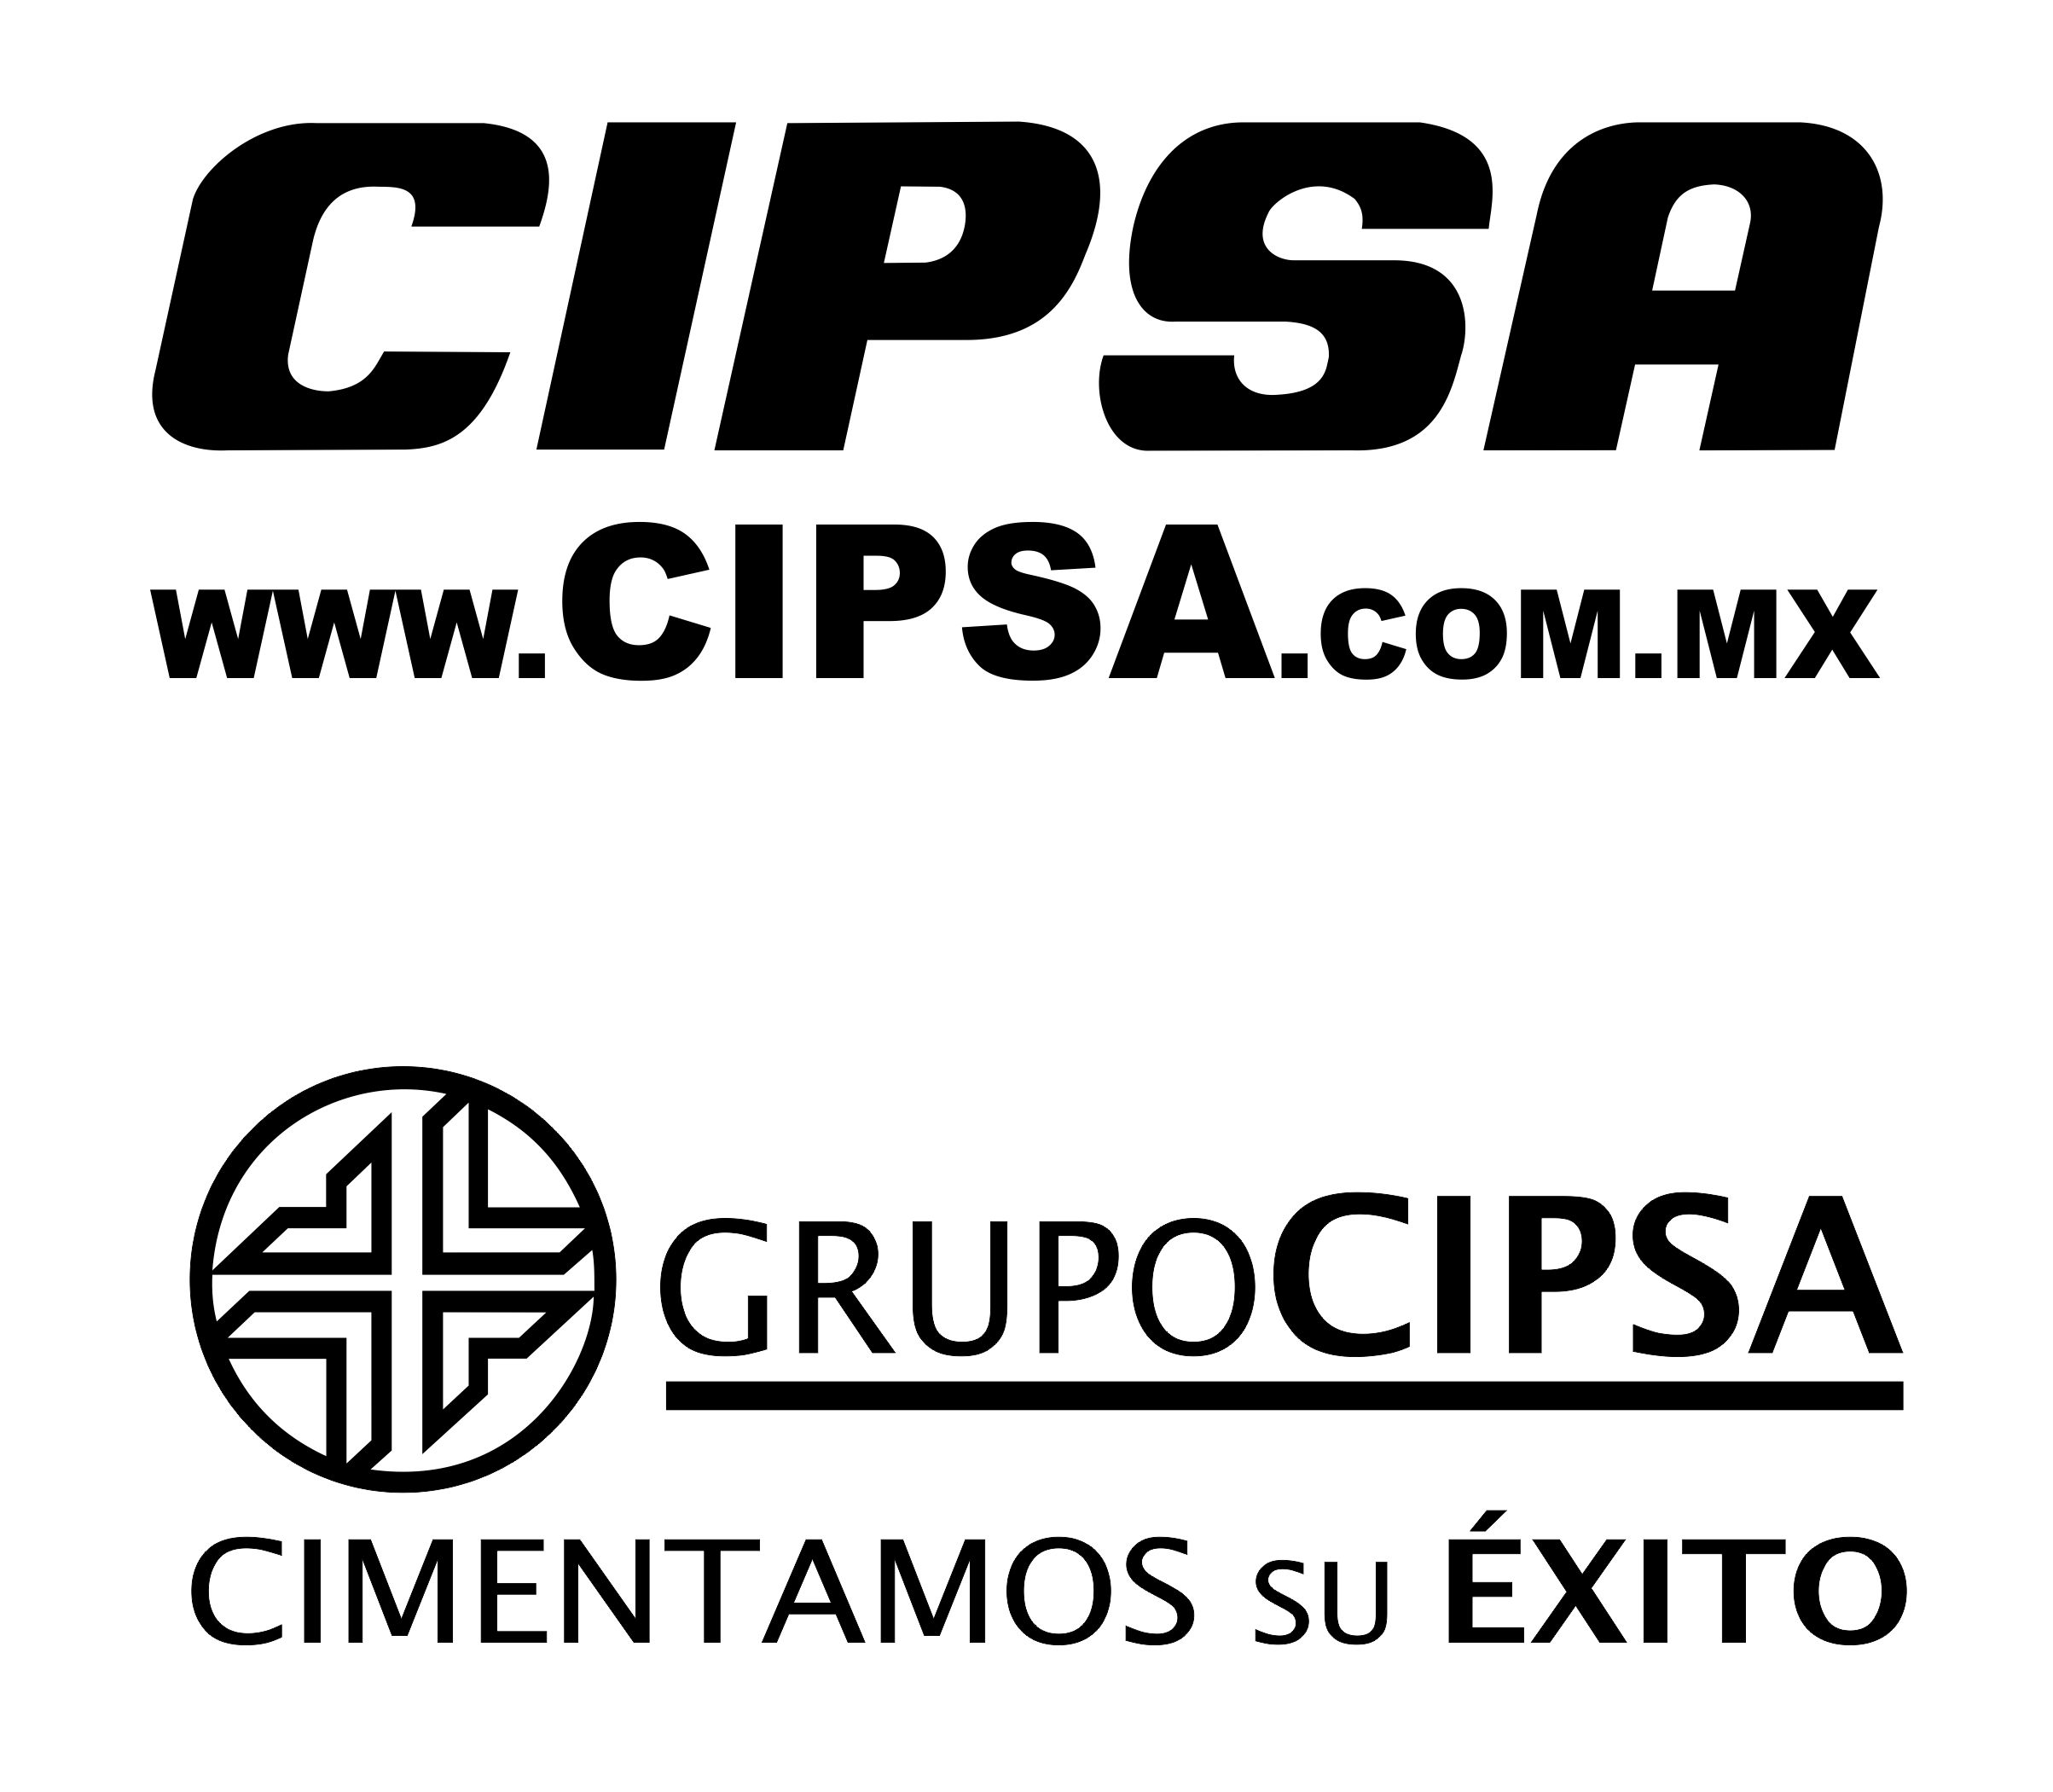 CIPSA dos logos.jpg